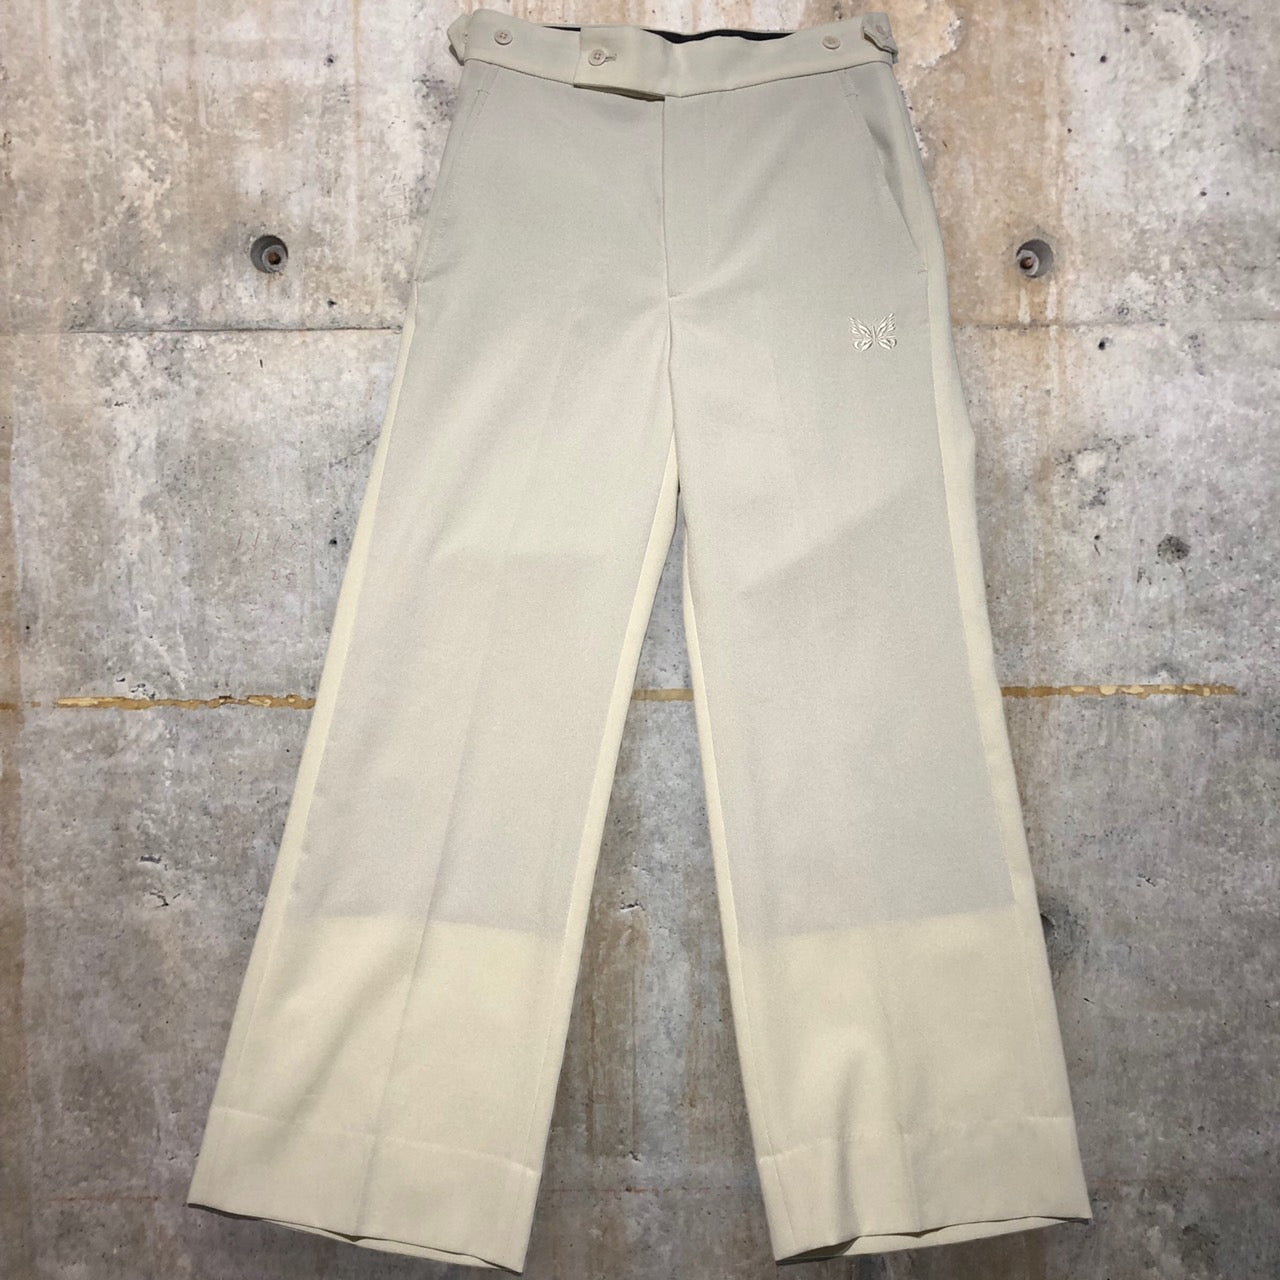 Needles(ニードルズ) Side Tab Trouser/ピヨン刺繍スラックスパンツ KP331 XS ホワイト STUDIOUS別注